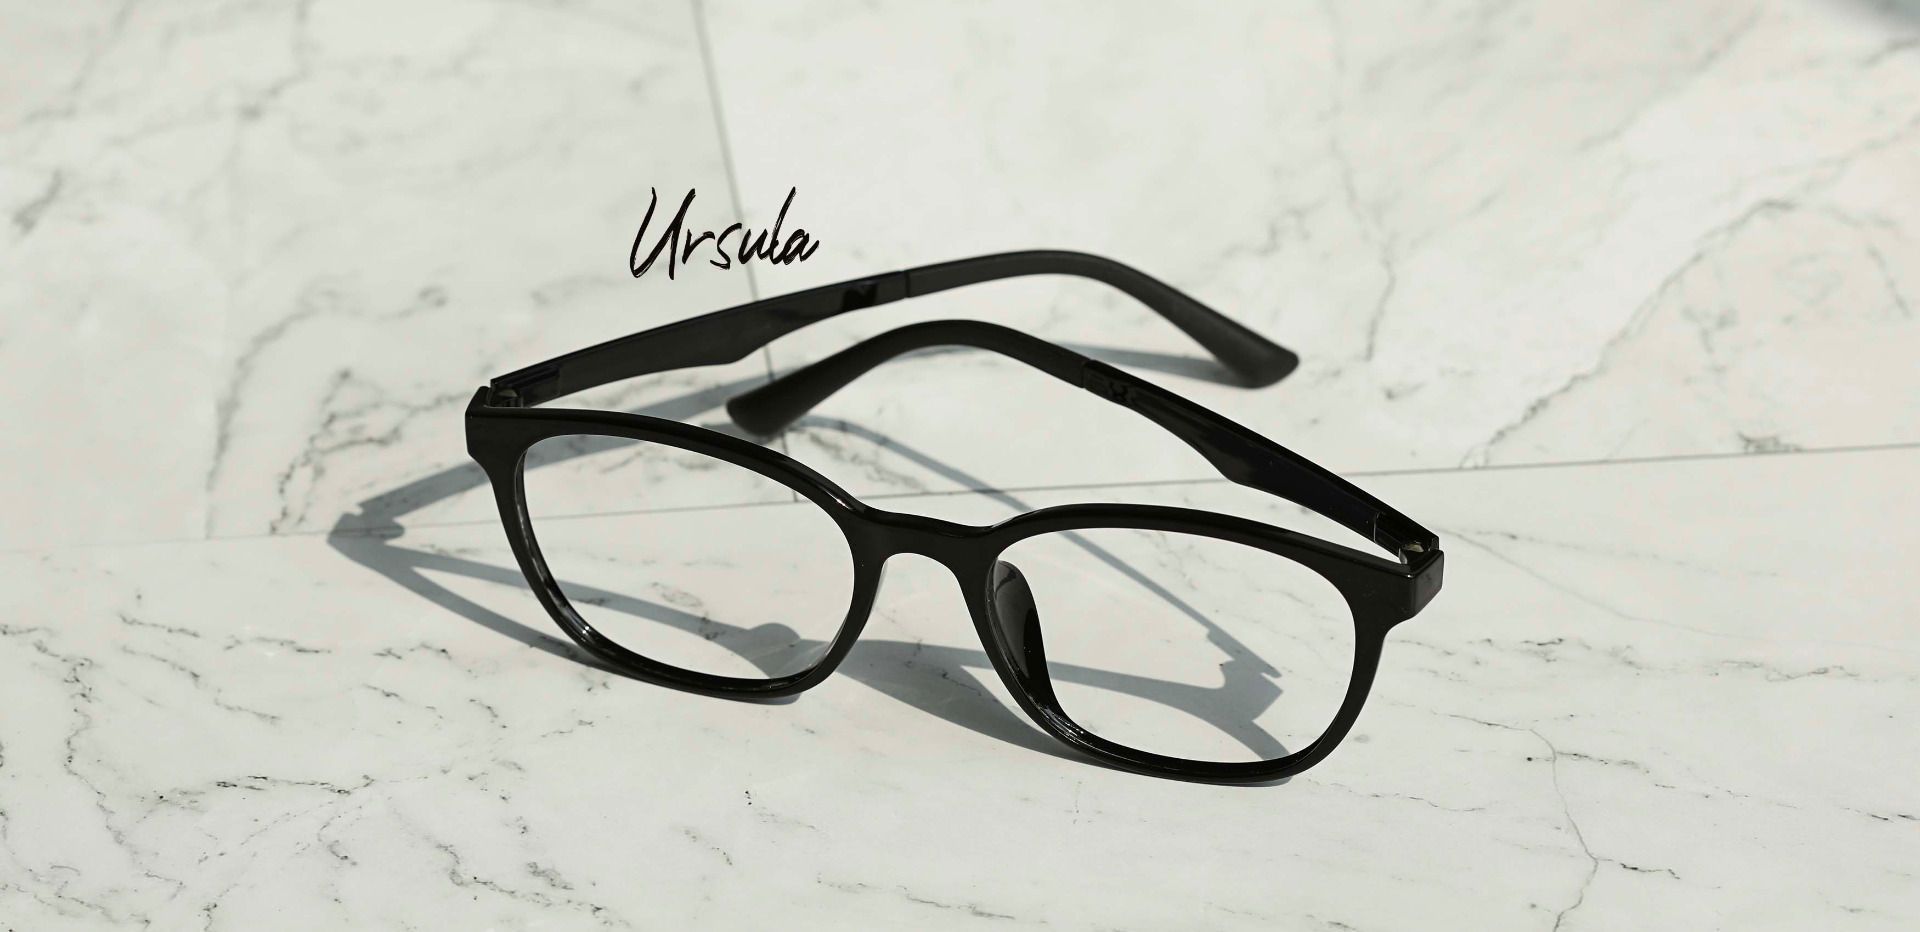 Ursula Oval Prescription Glasses - Black